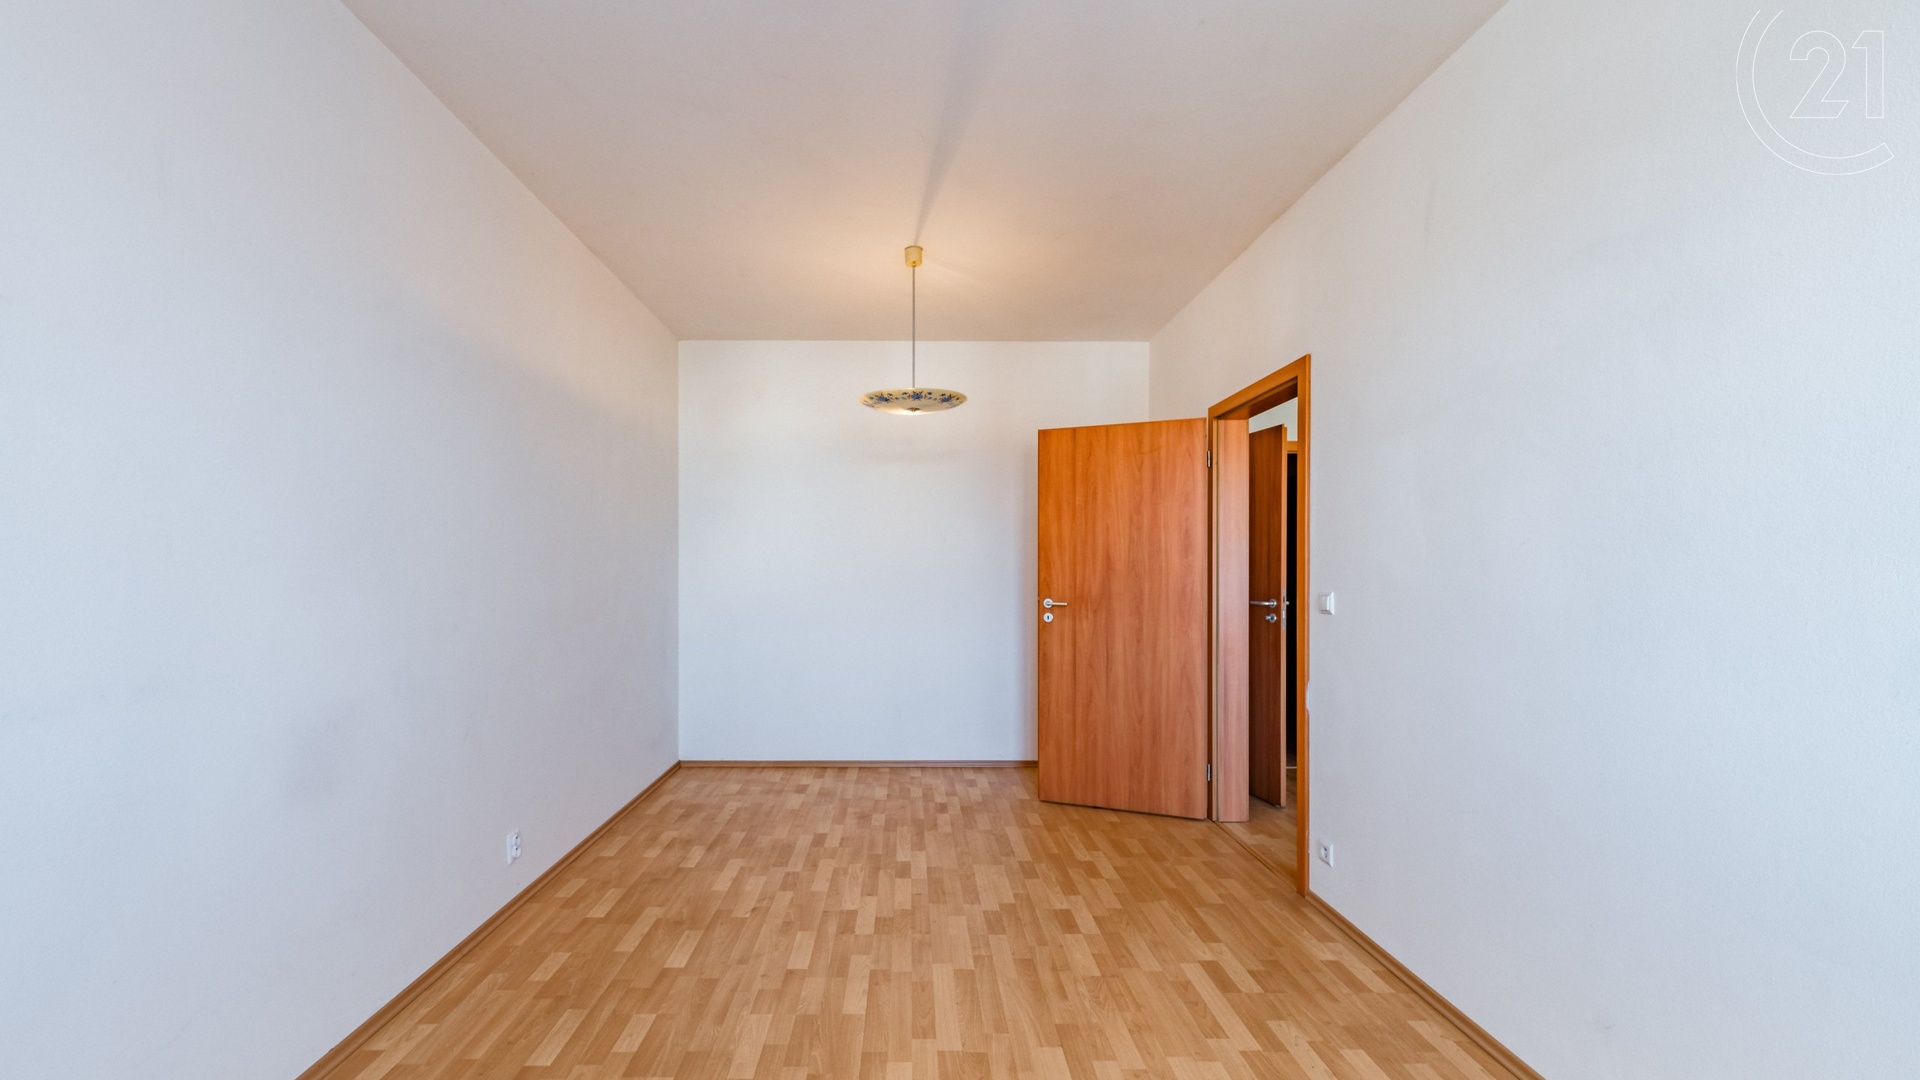 Prodej zděného bytu 2+kk o 66 m² v centru města Tábora.